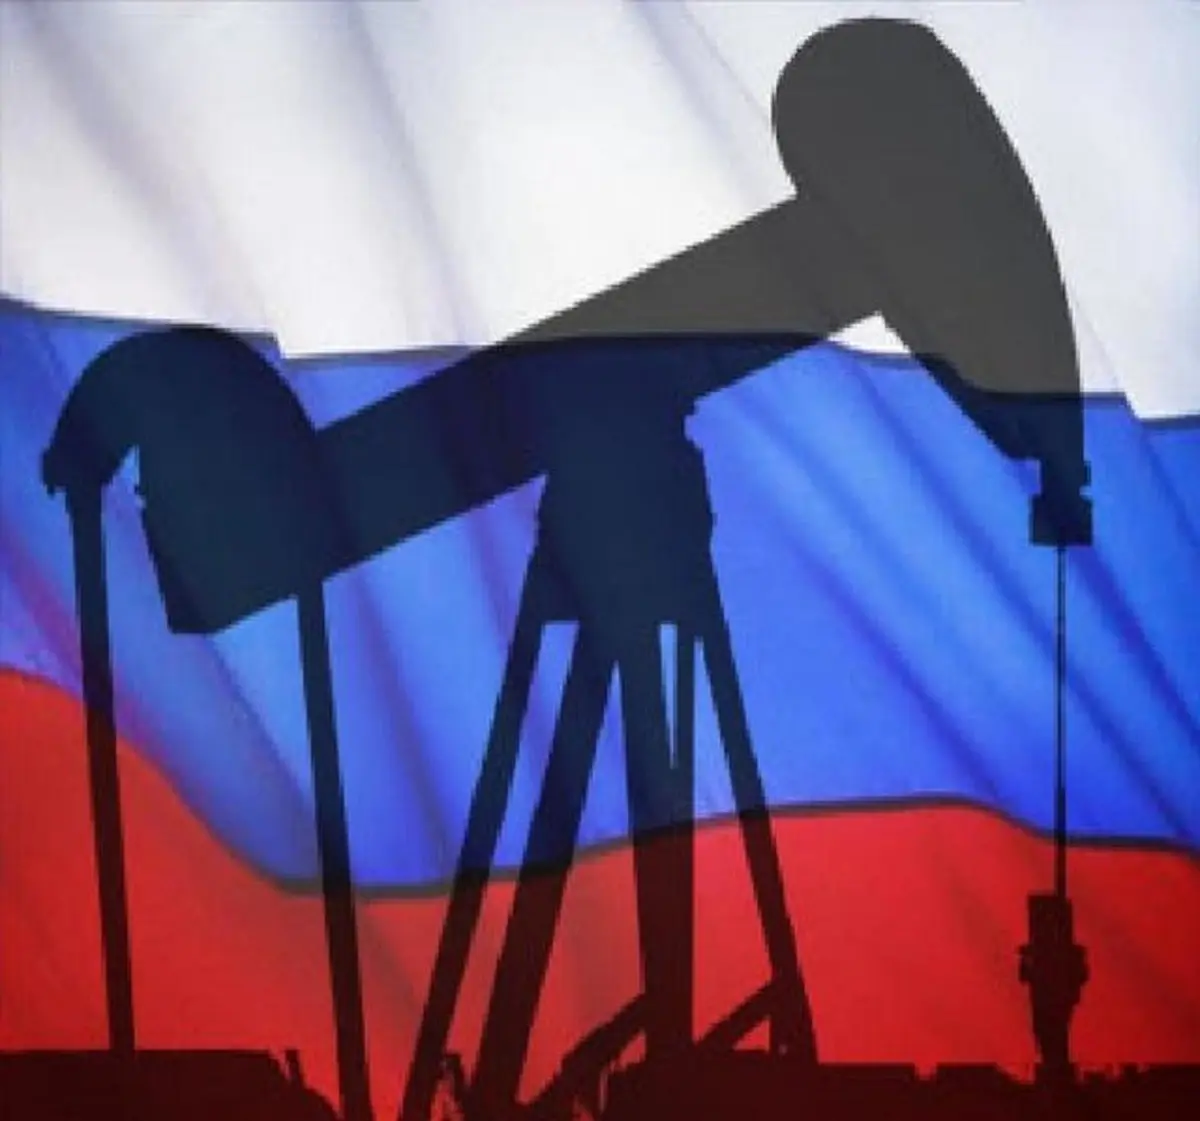 دکتر فشارکی: نفت روسیه بزرگتر از اینه که بشه تحریمش کرد! 